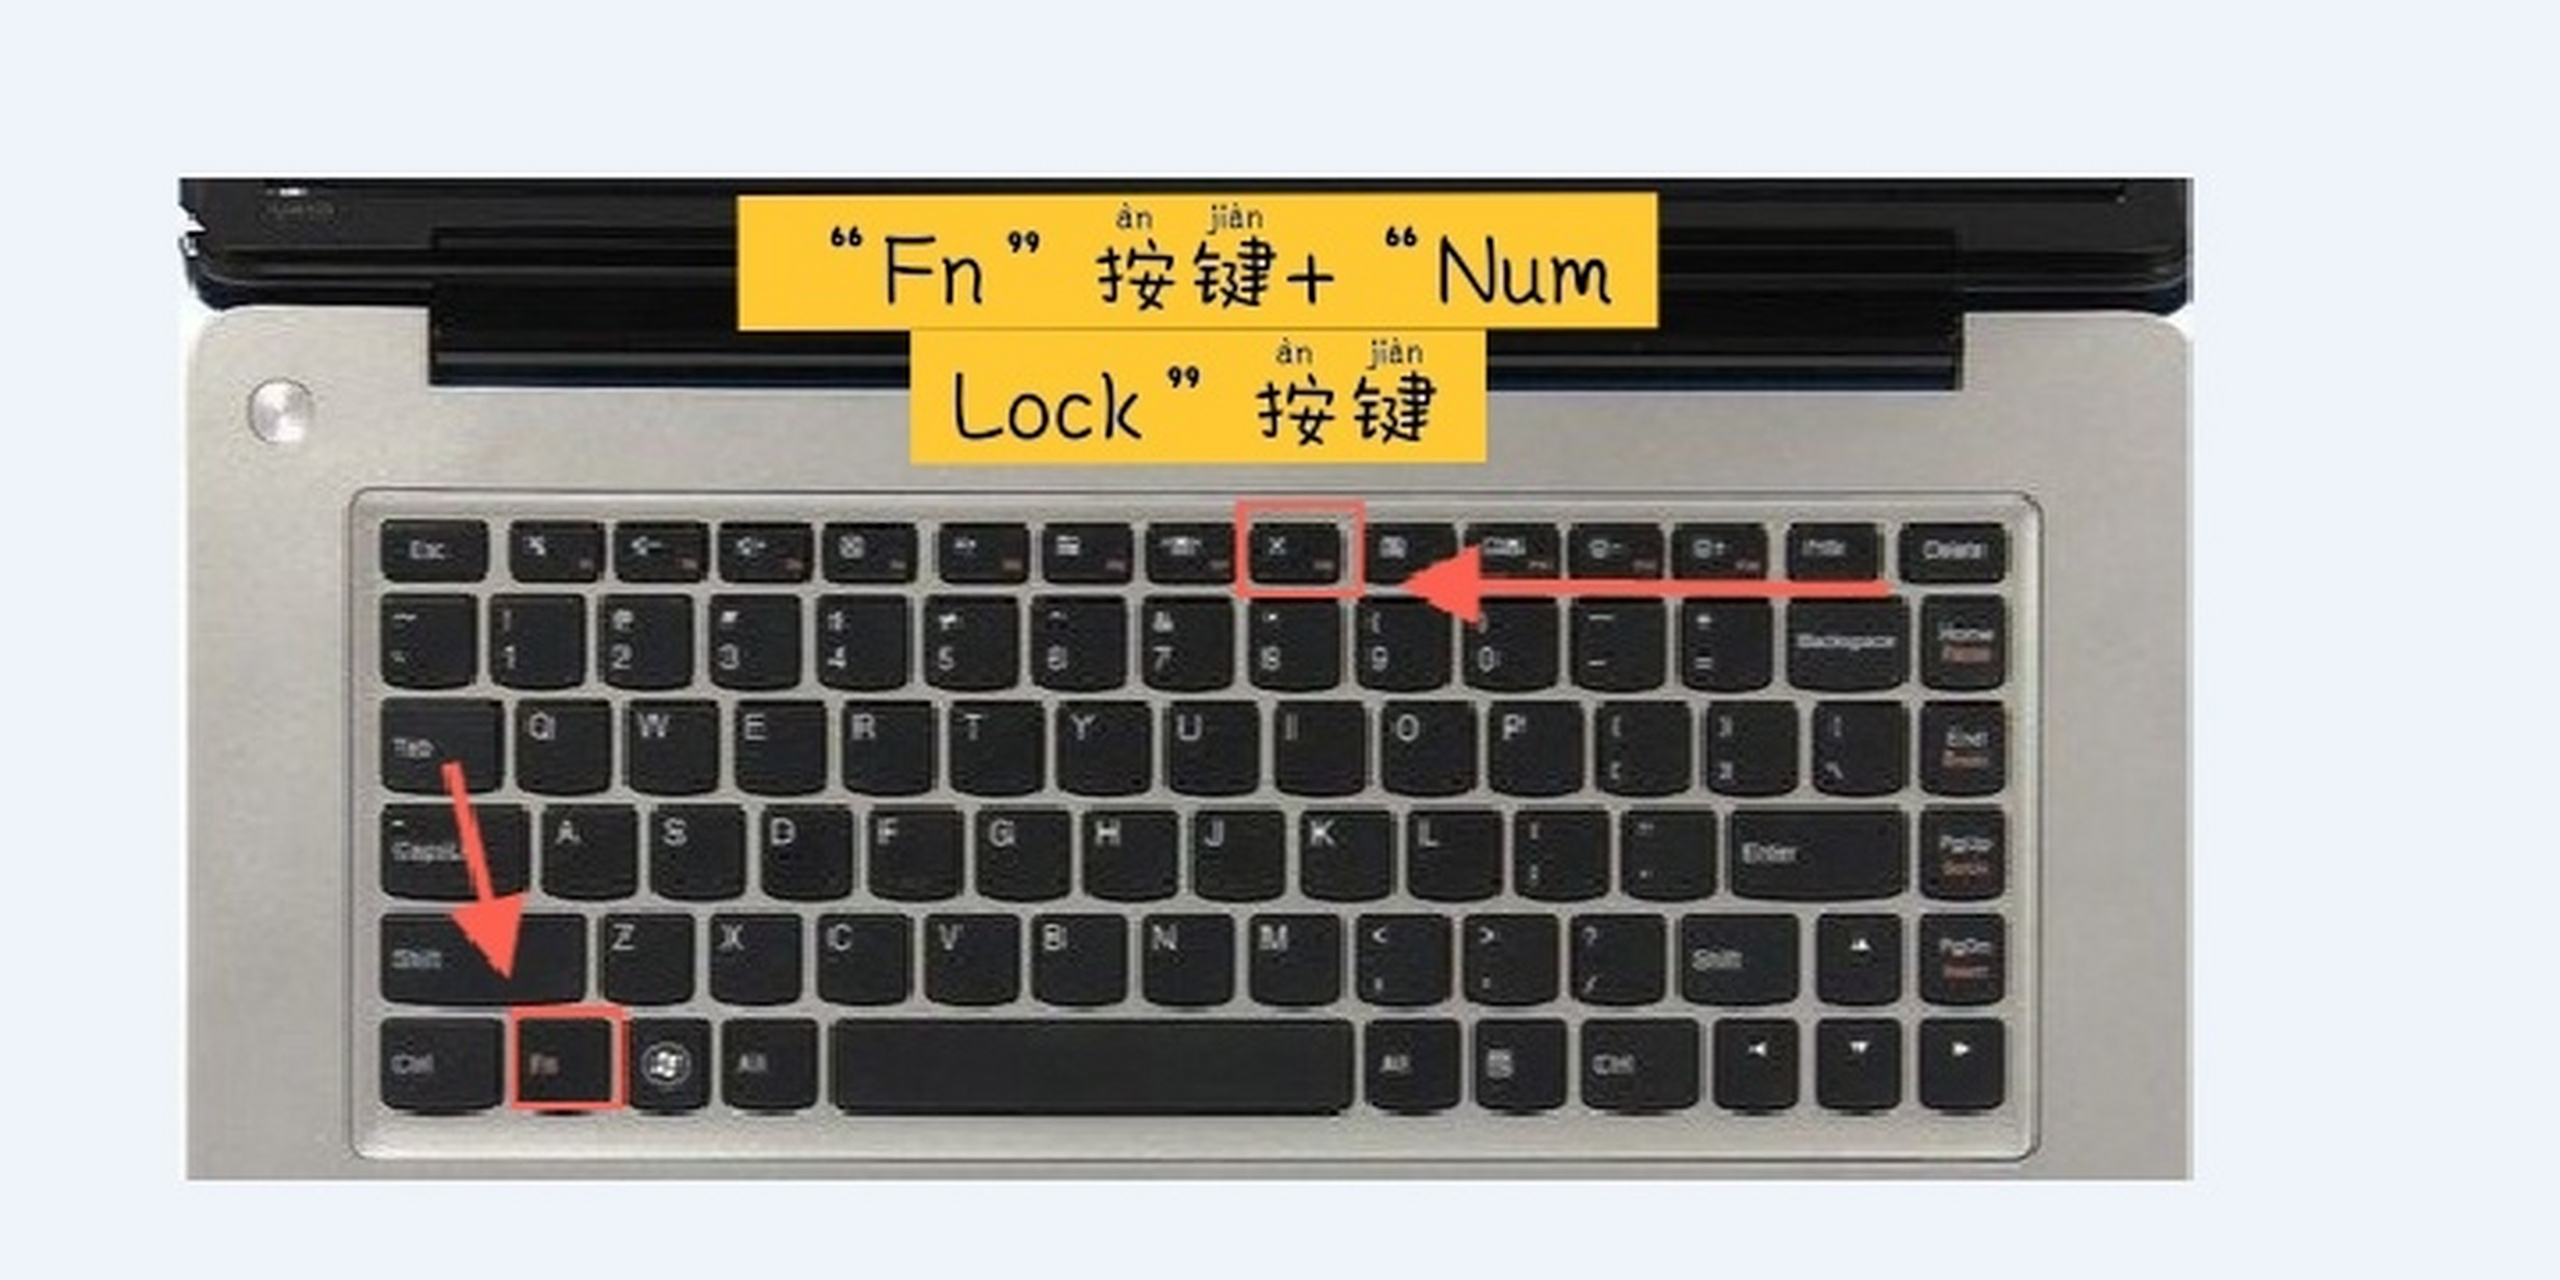 笔记本小键盘开解锁 电脑键盘上的 u i o p j k l m 这几个带有数字的